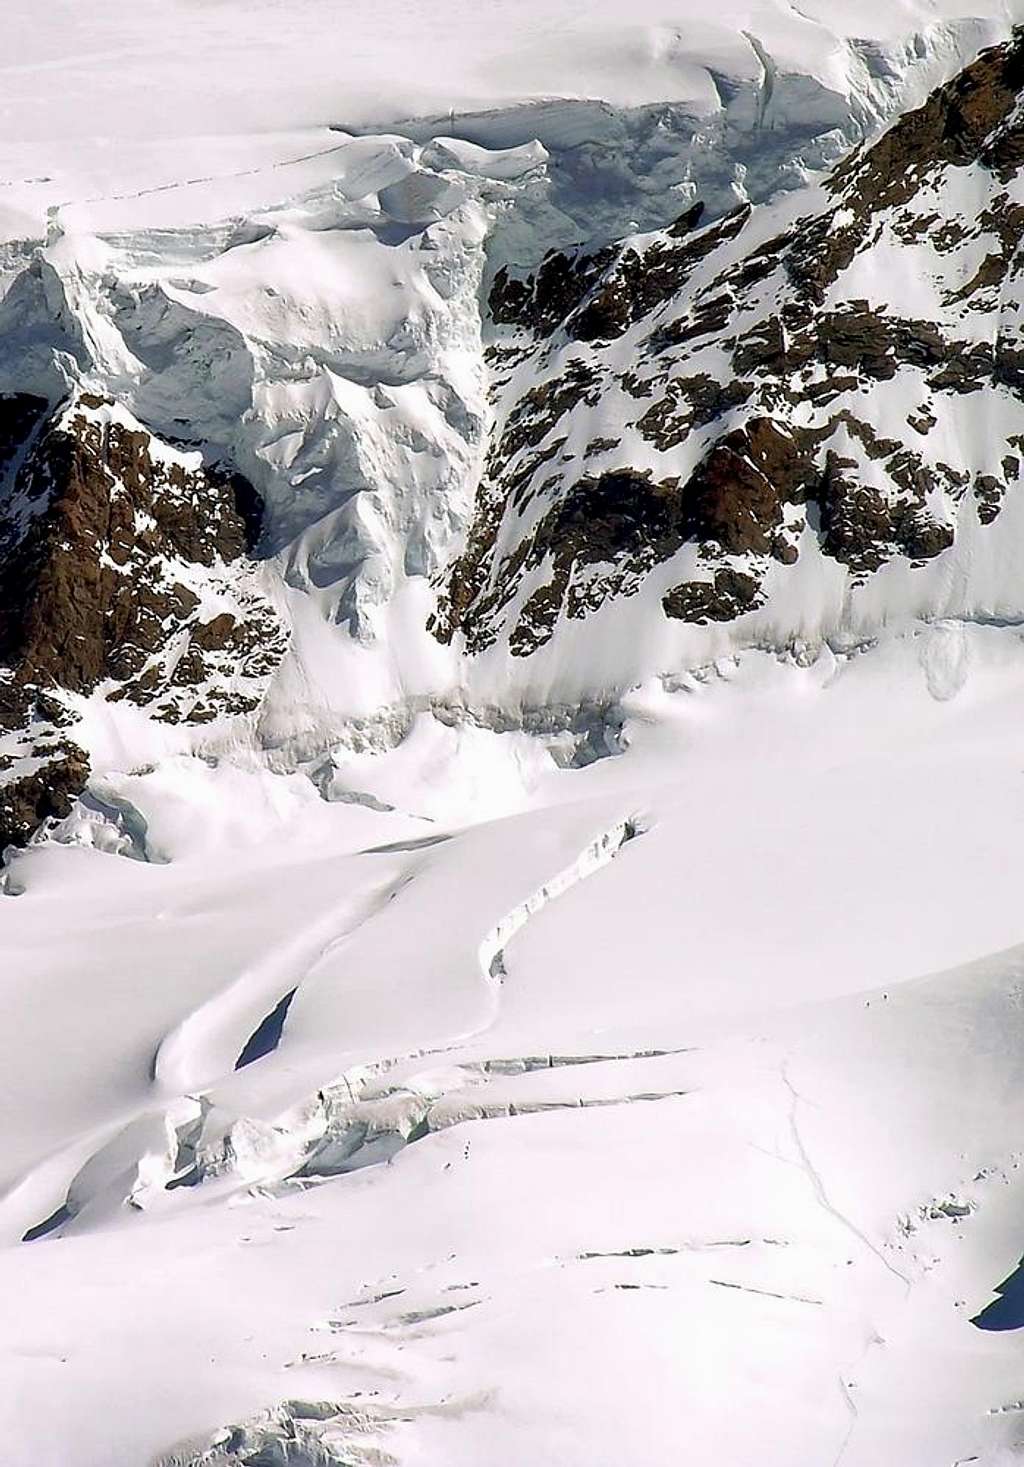 Monte Rosa Gletscher